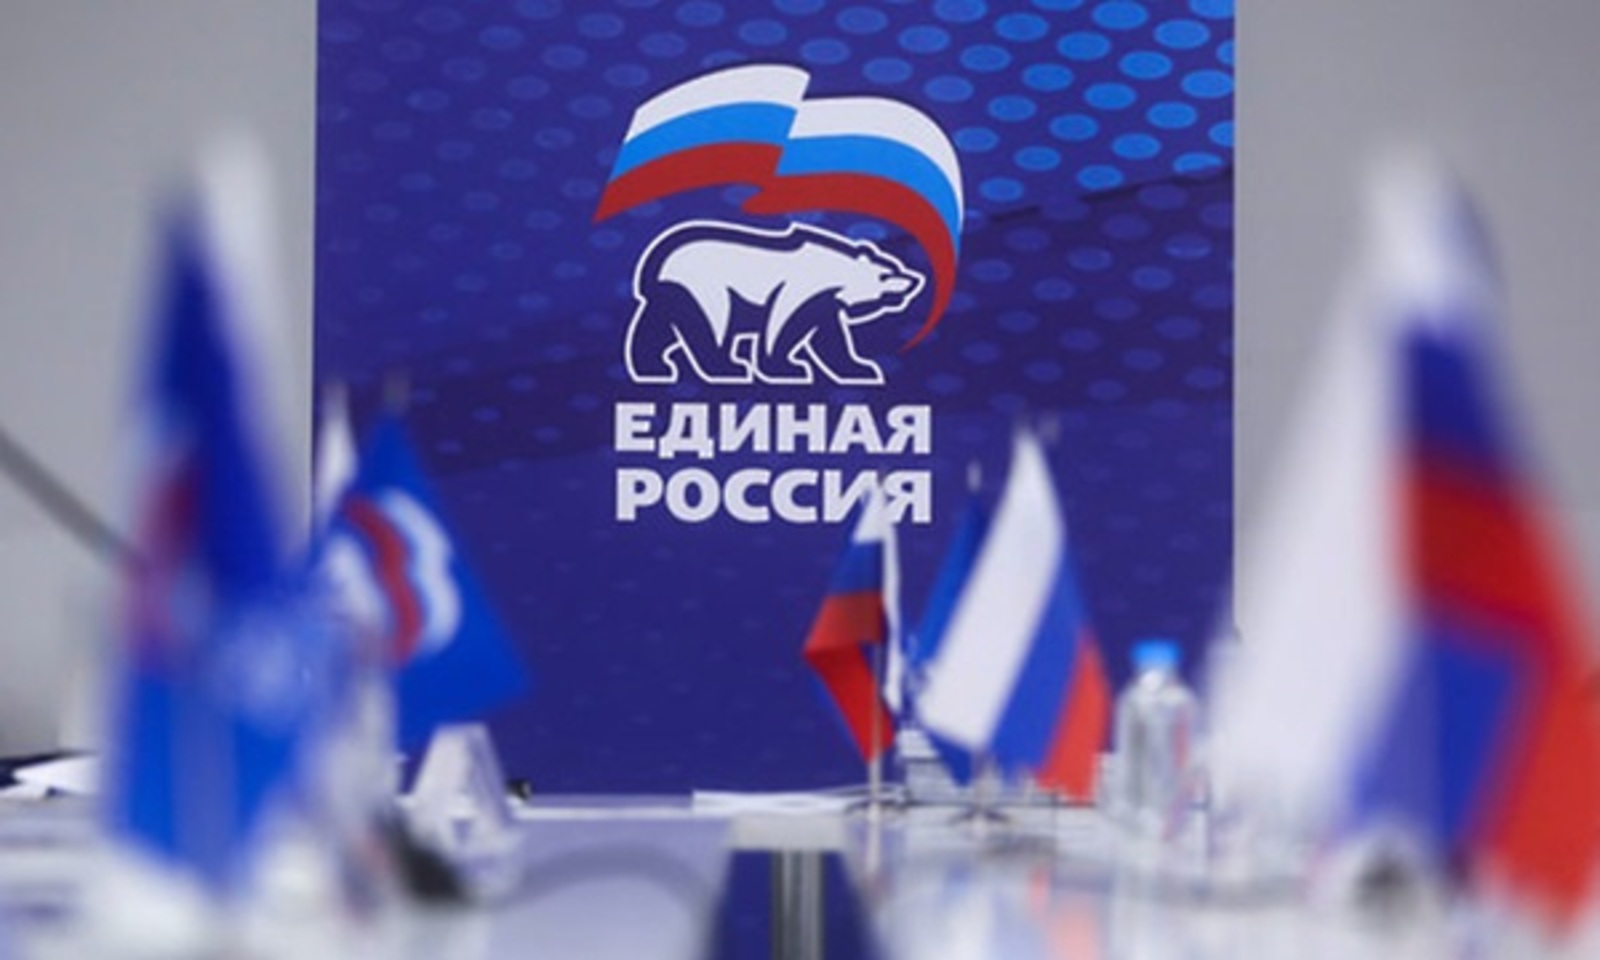 Предварительное голосование Pg.er.ru